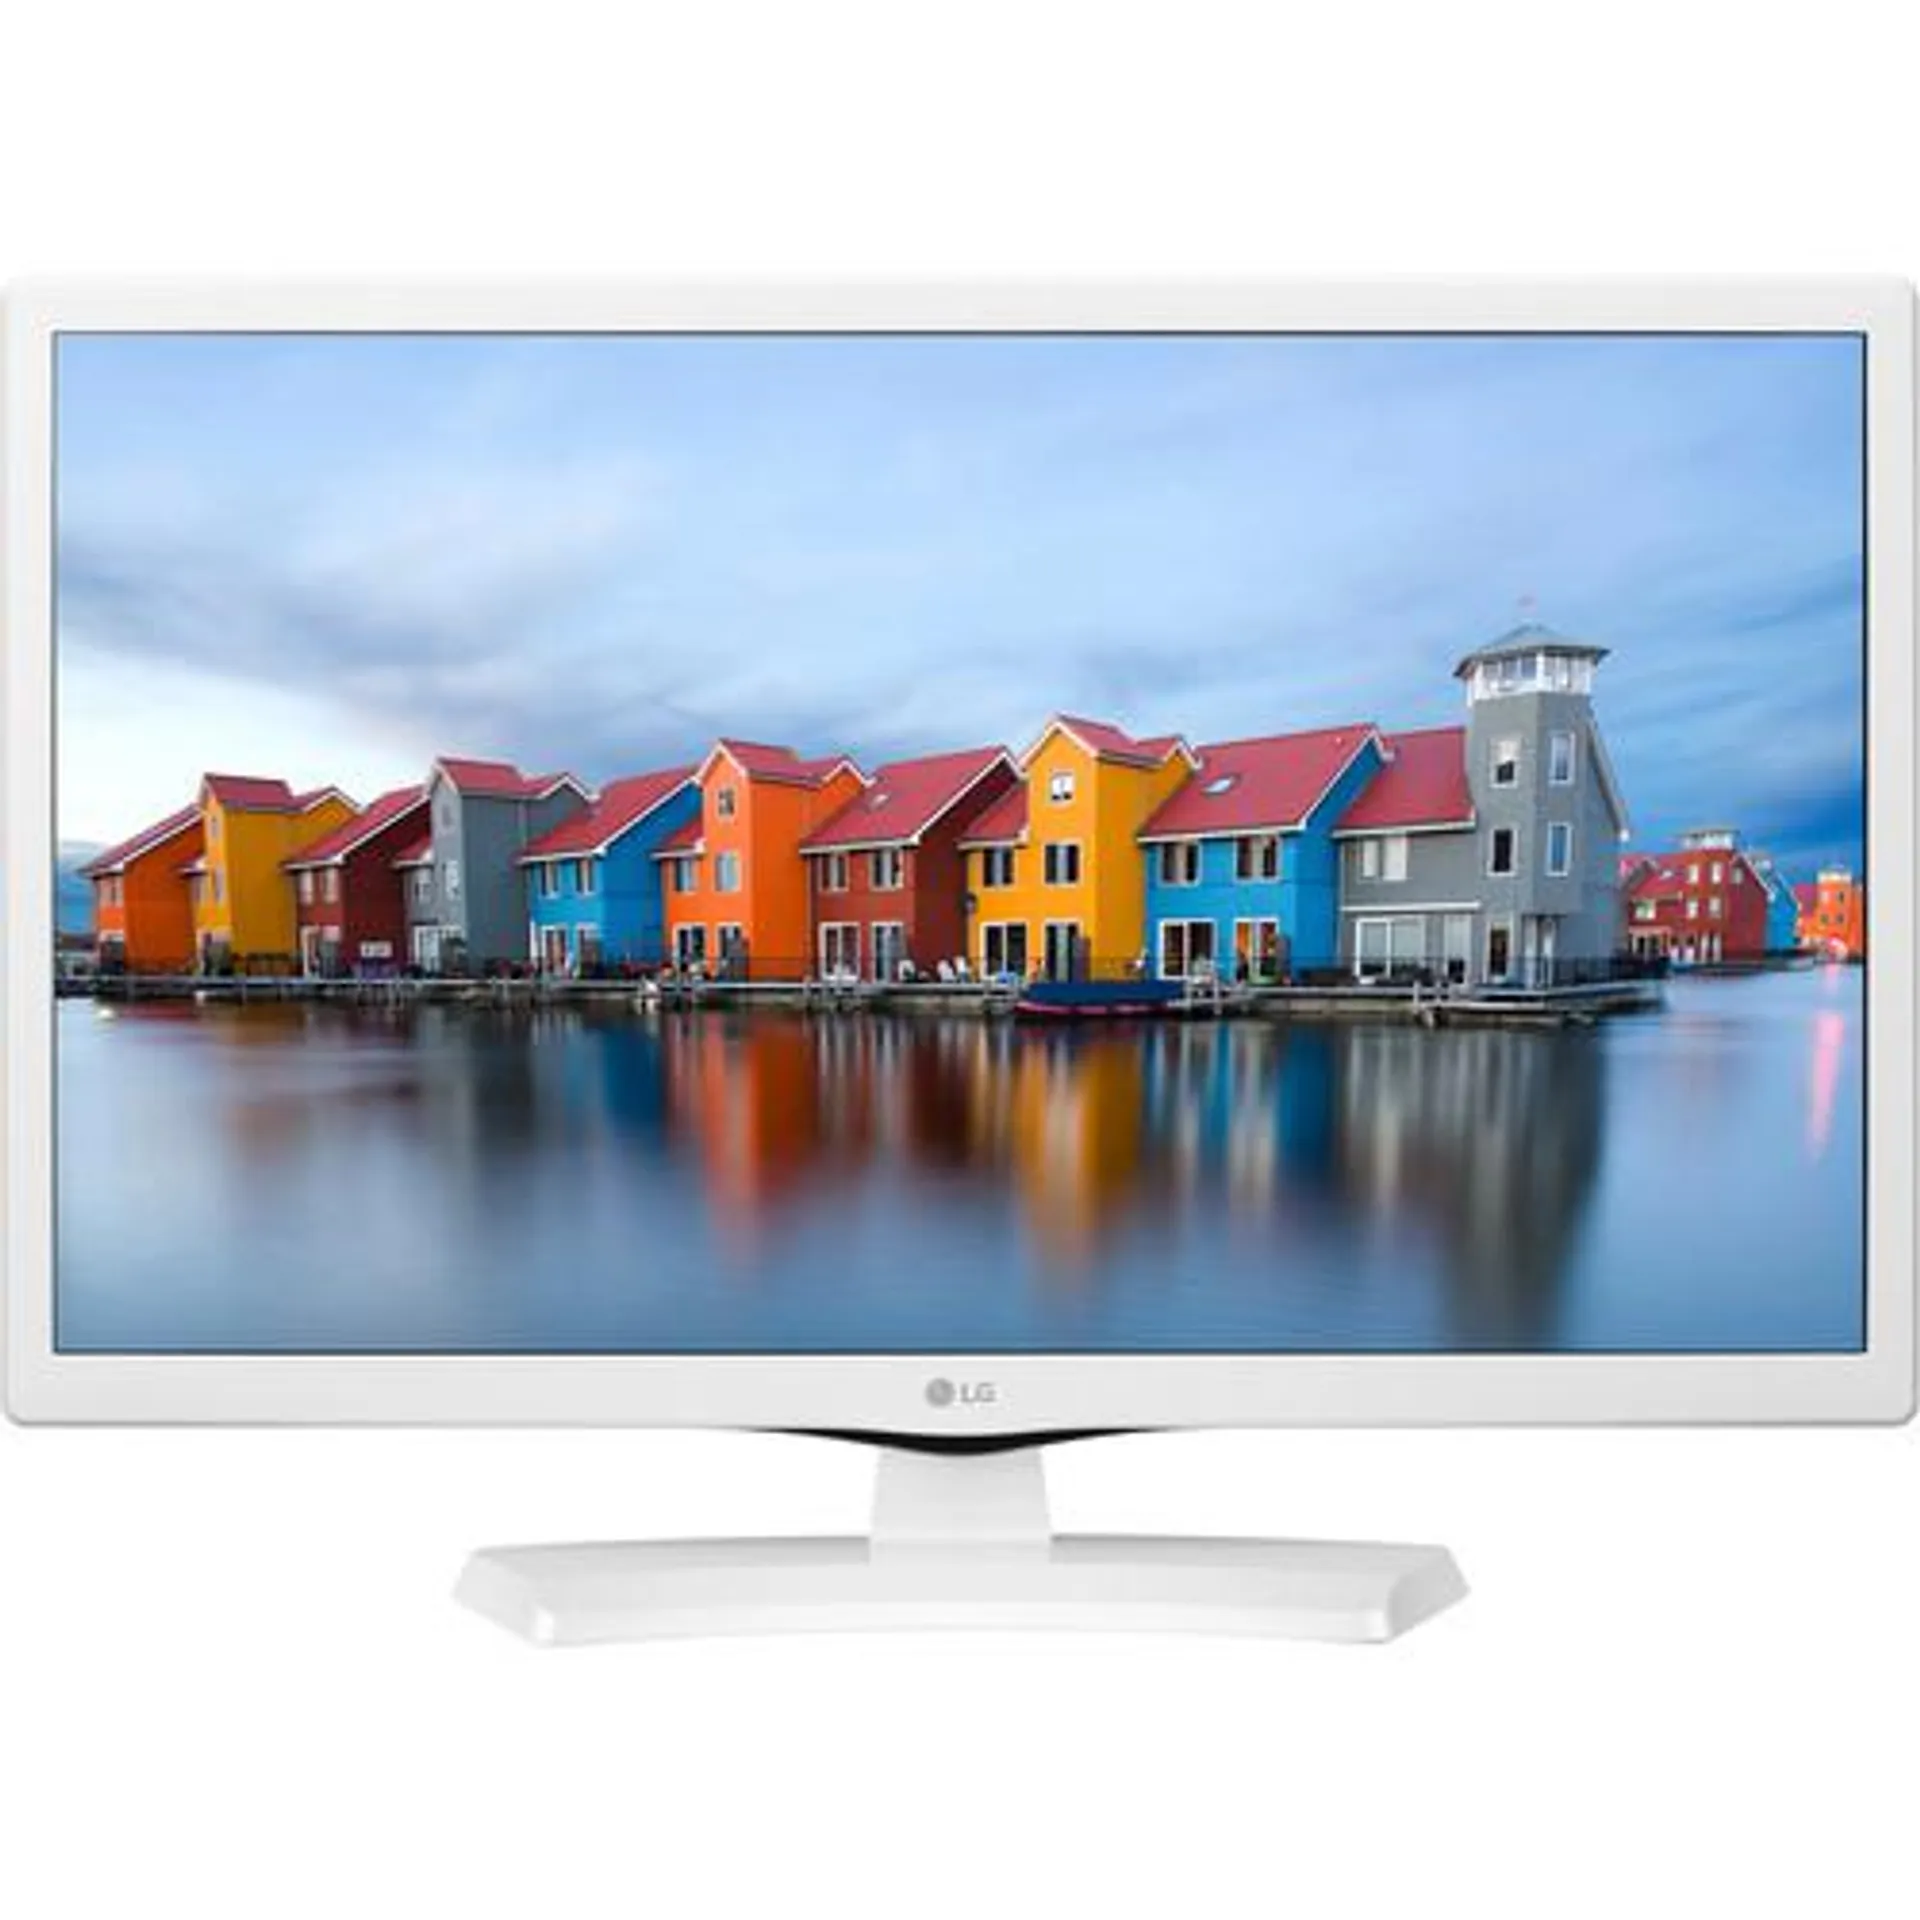 LG LJ4540 Series 24" Class HD LED TV (White)